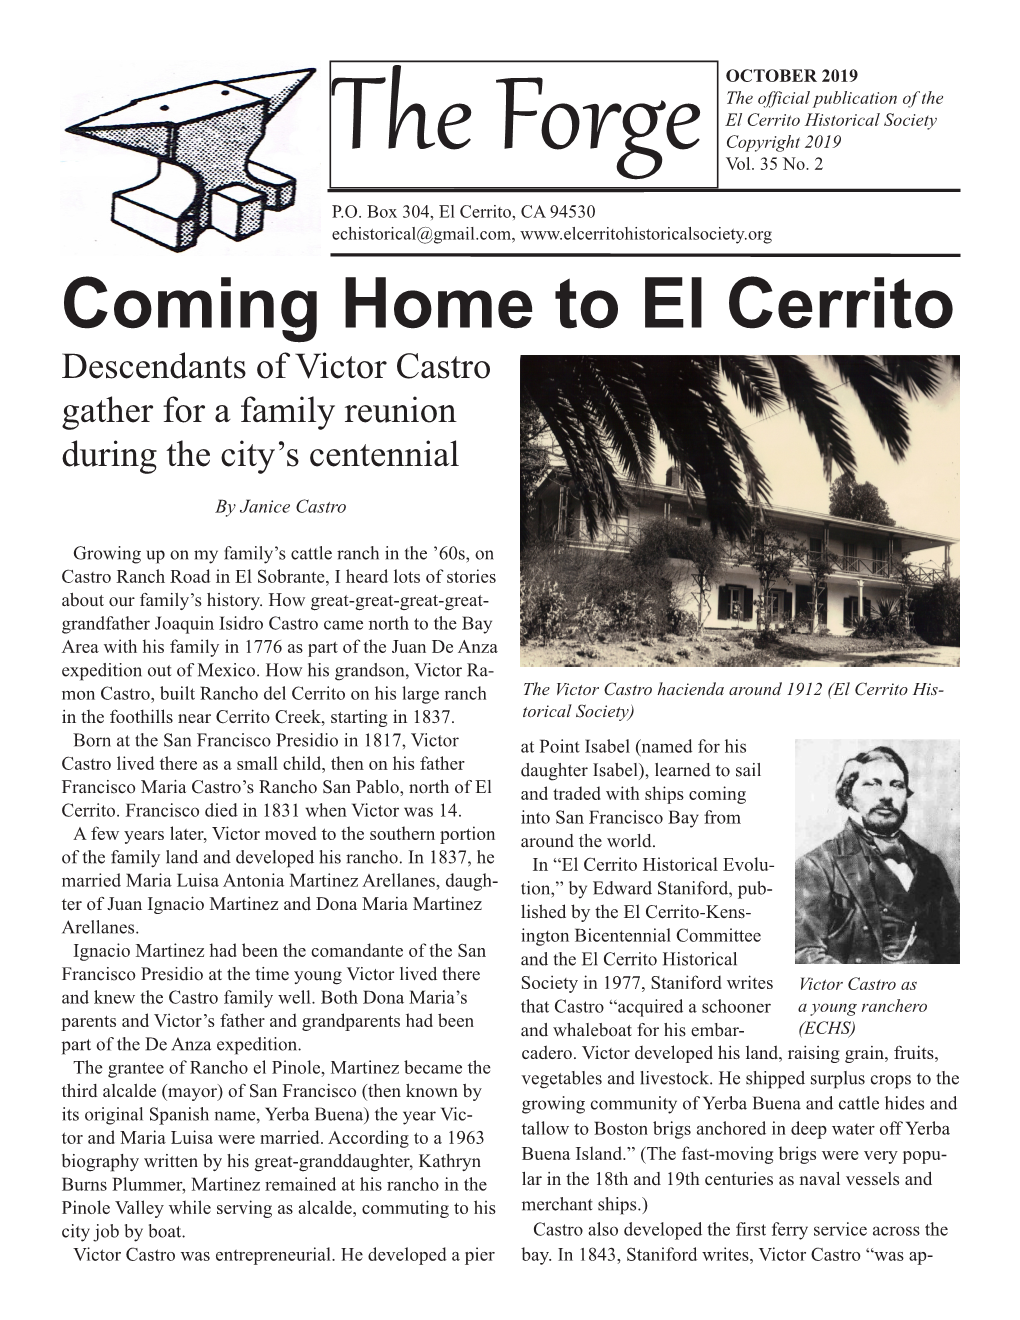 The Castros Come Home to El Cerrito